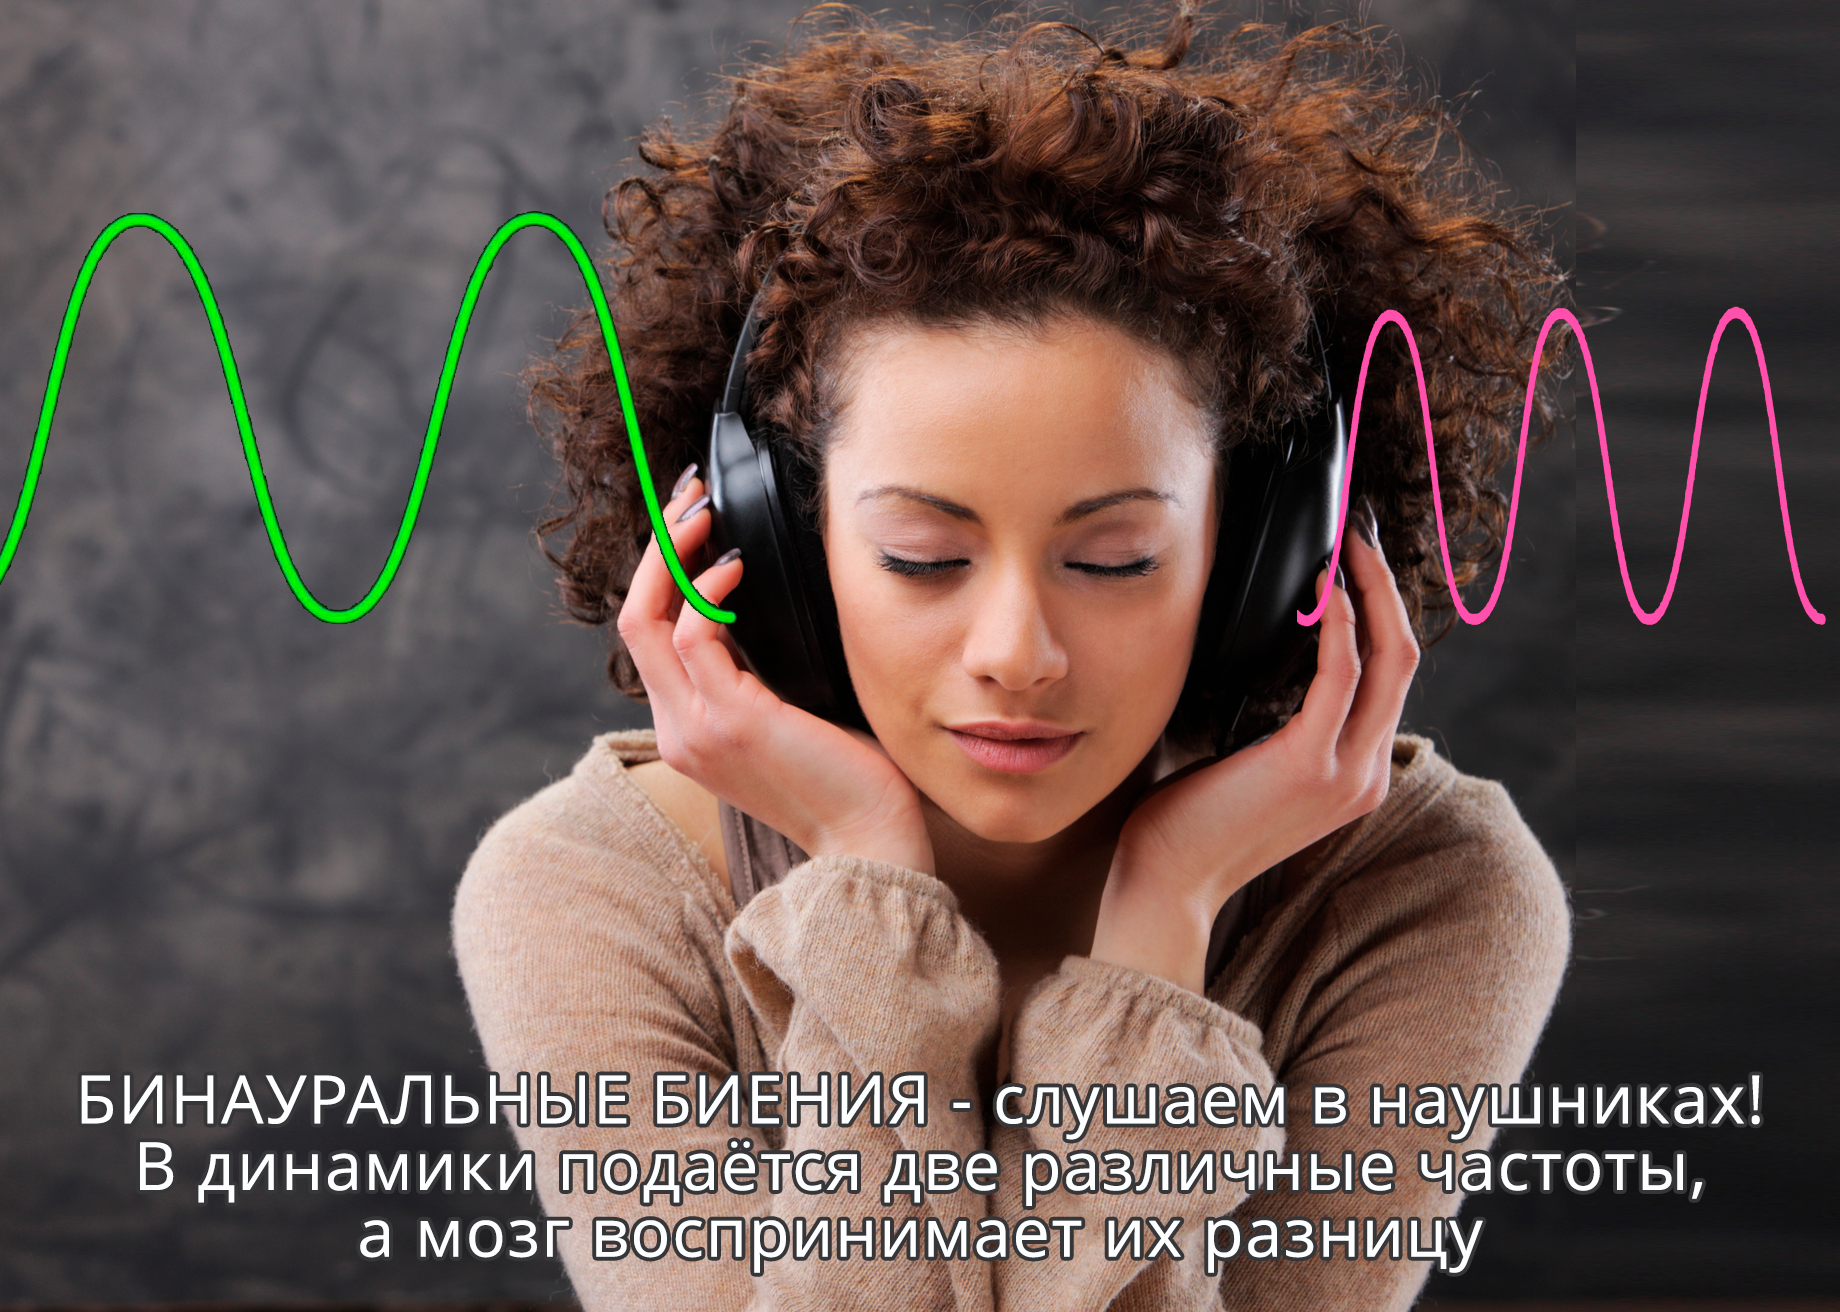 Семь научных доказательств влияния музыки на тело и психику людей [перевод] • stereo.ru